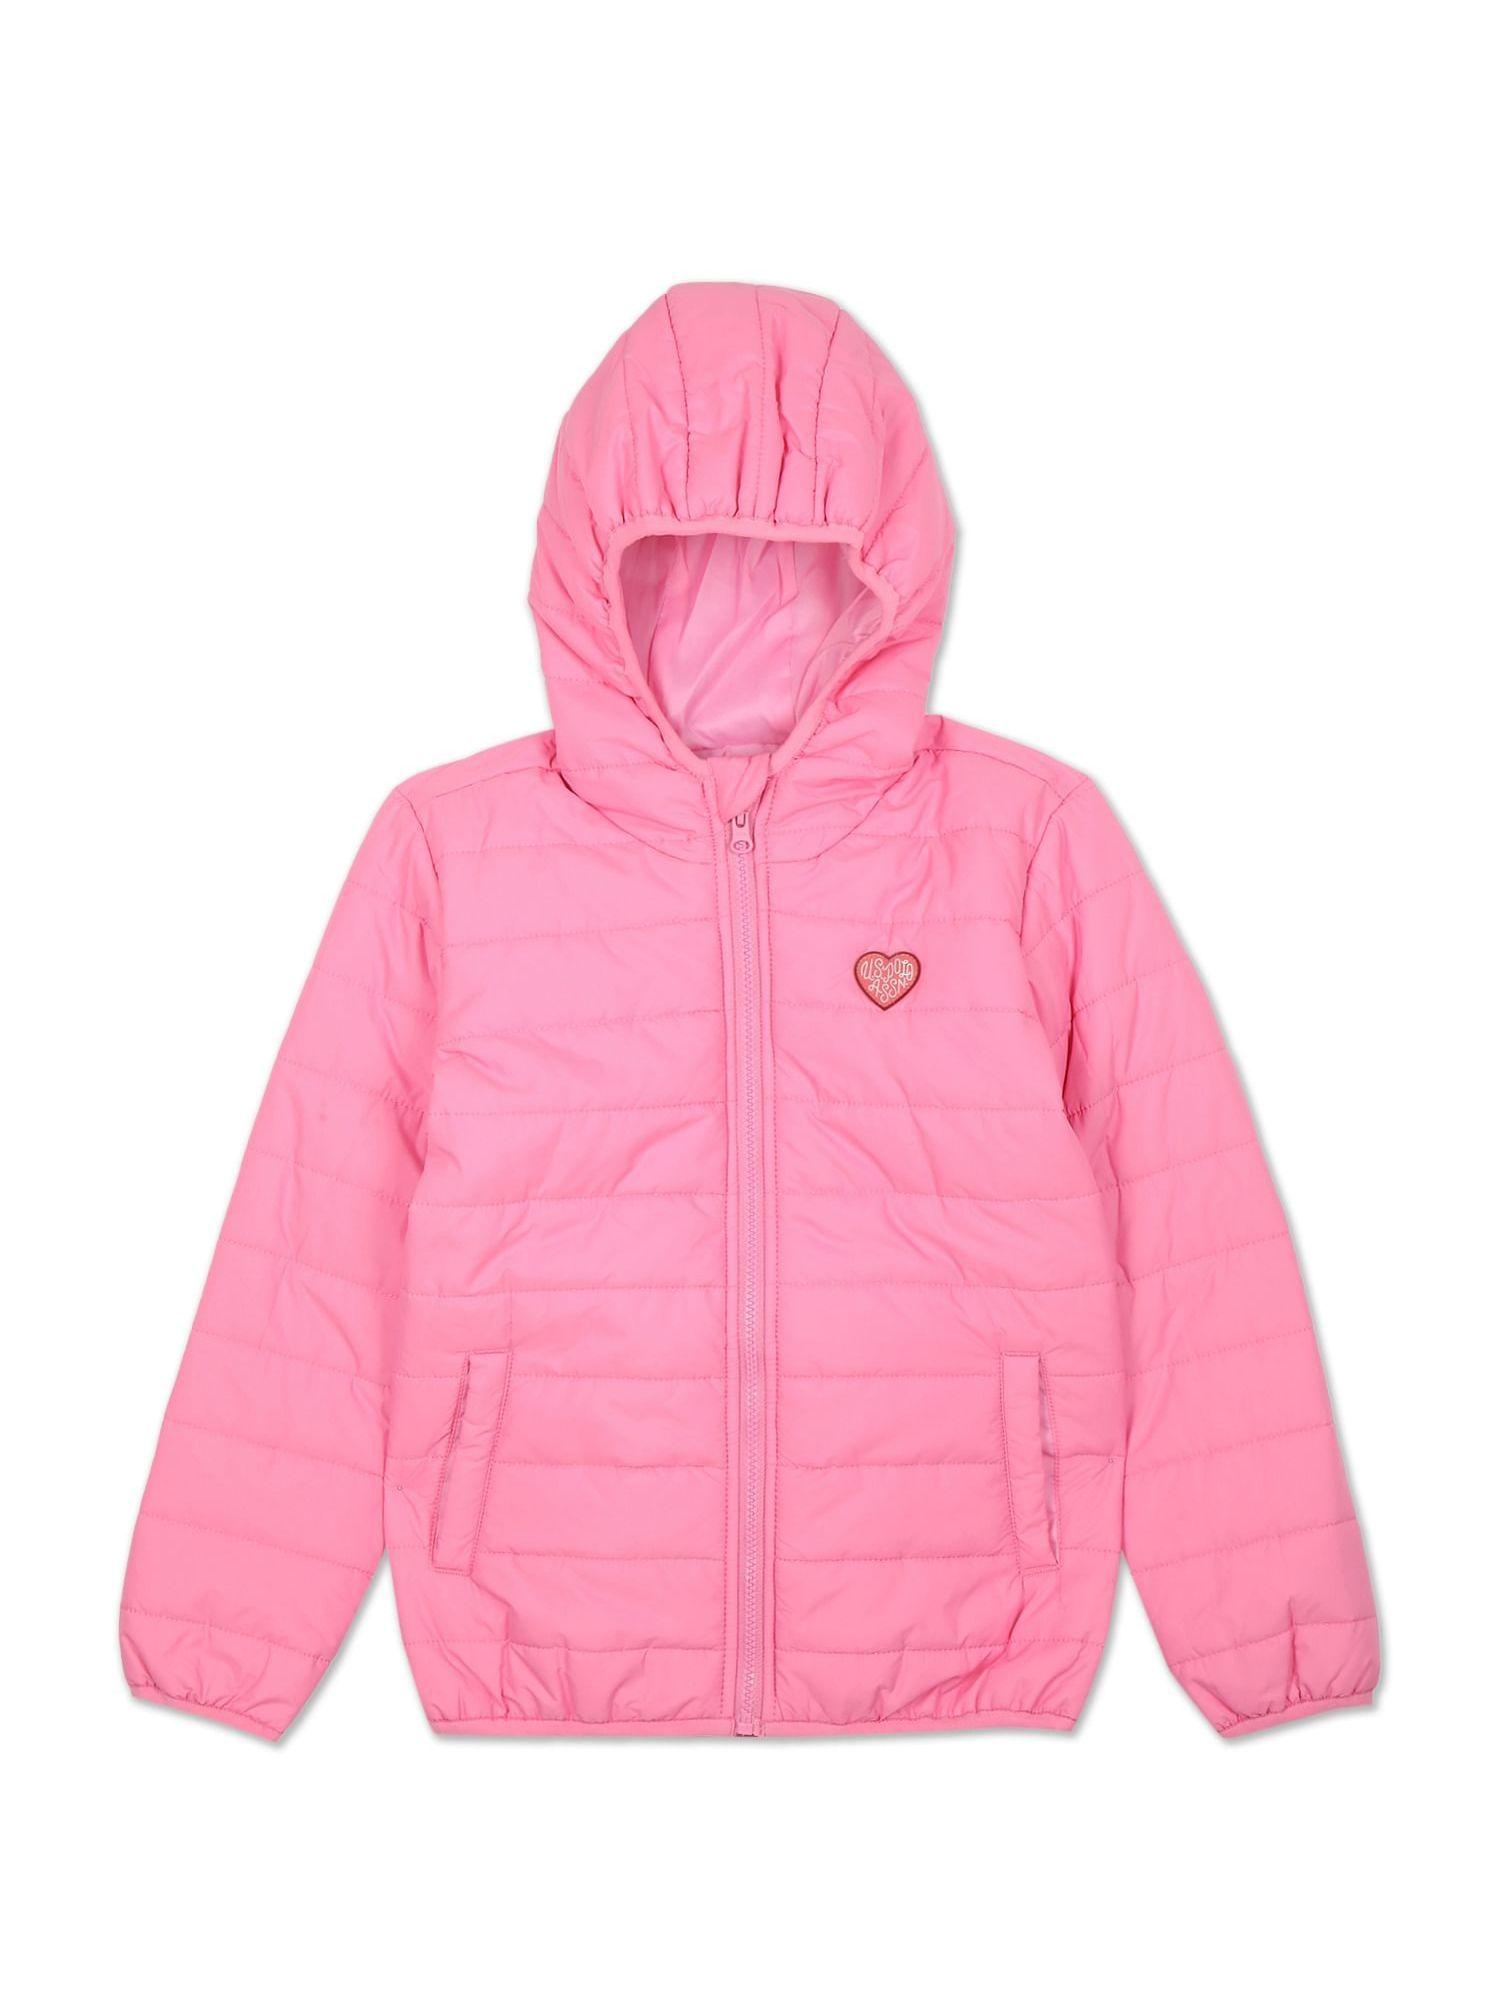 Girls Bubblegum Pink Hooded Puffer Jacket